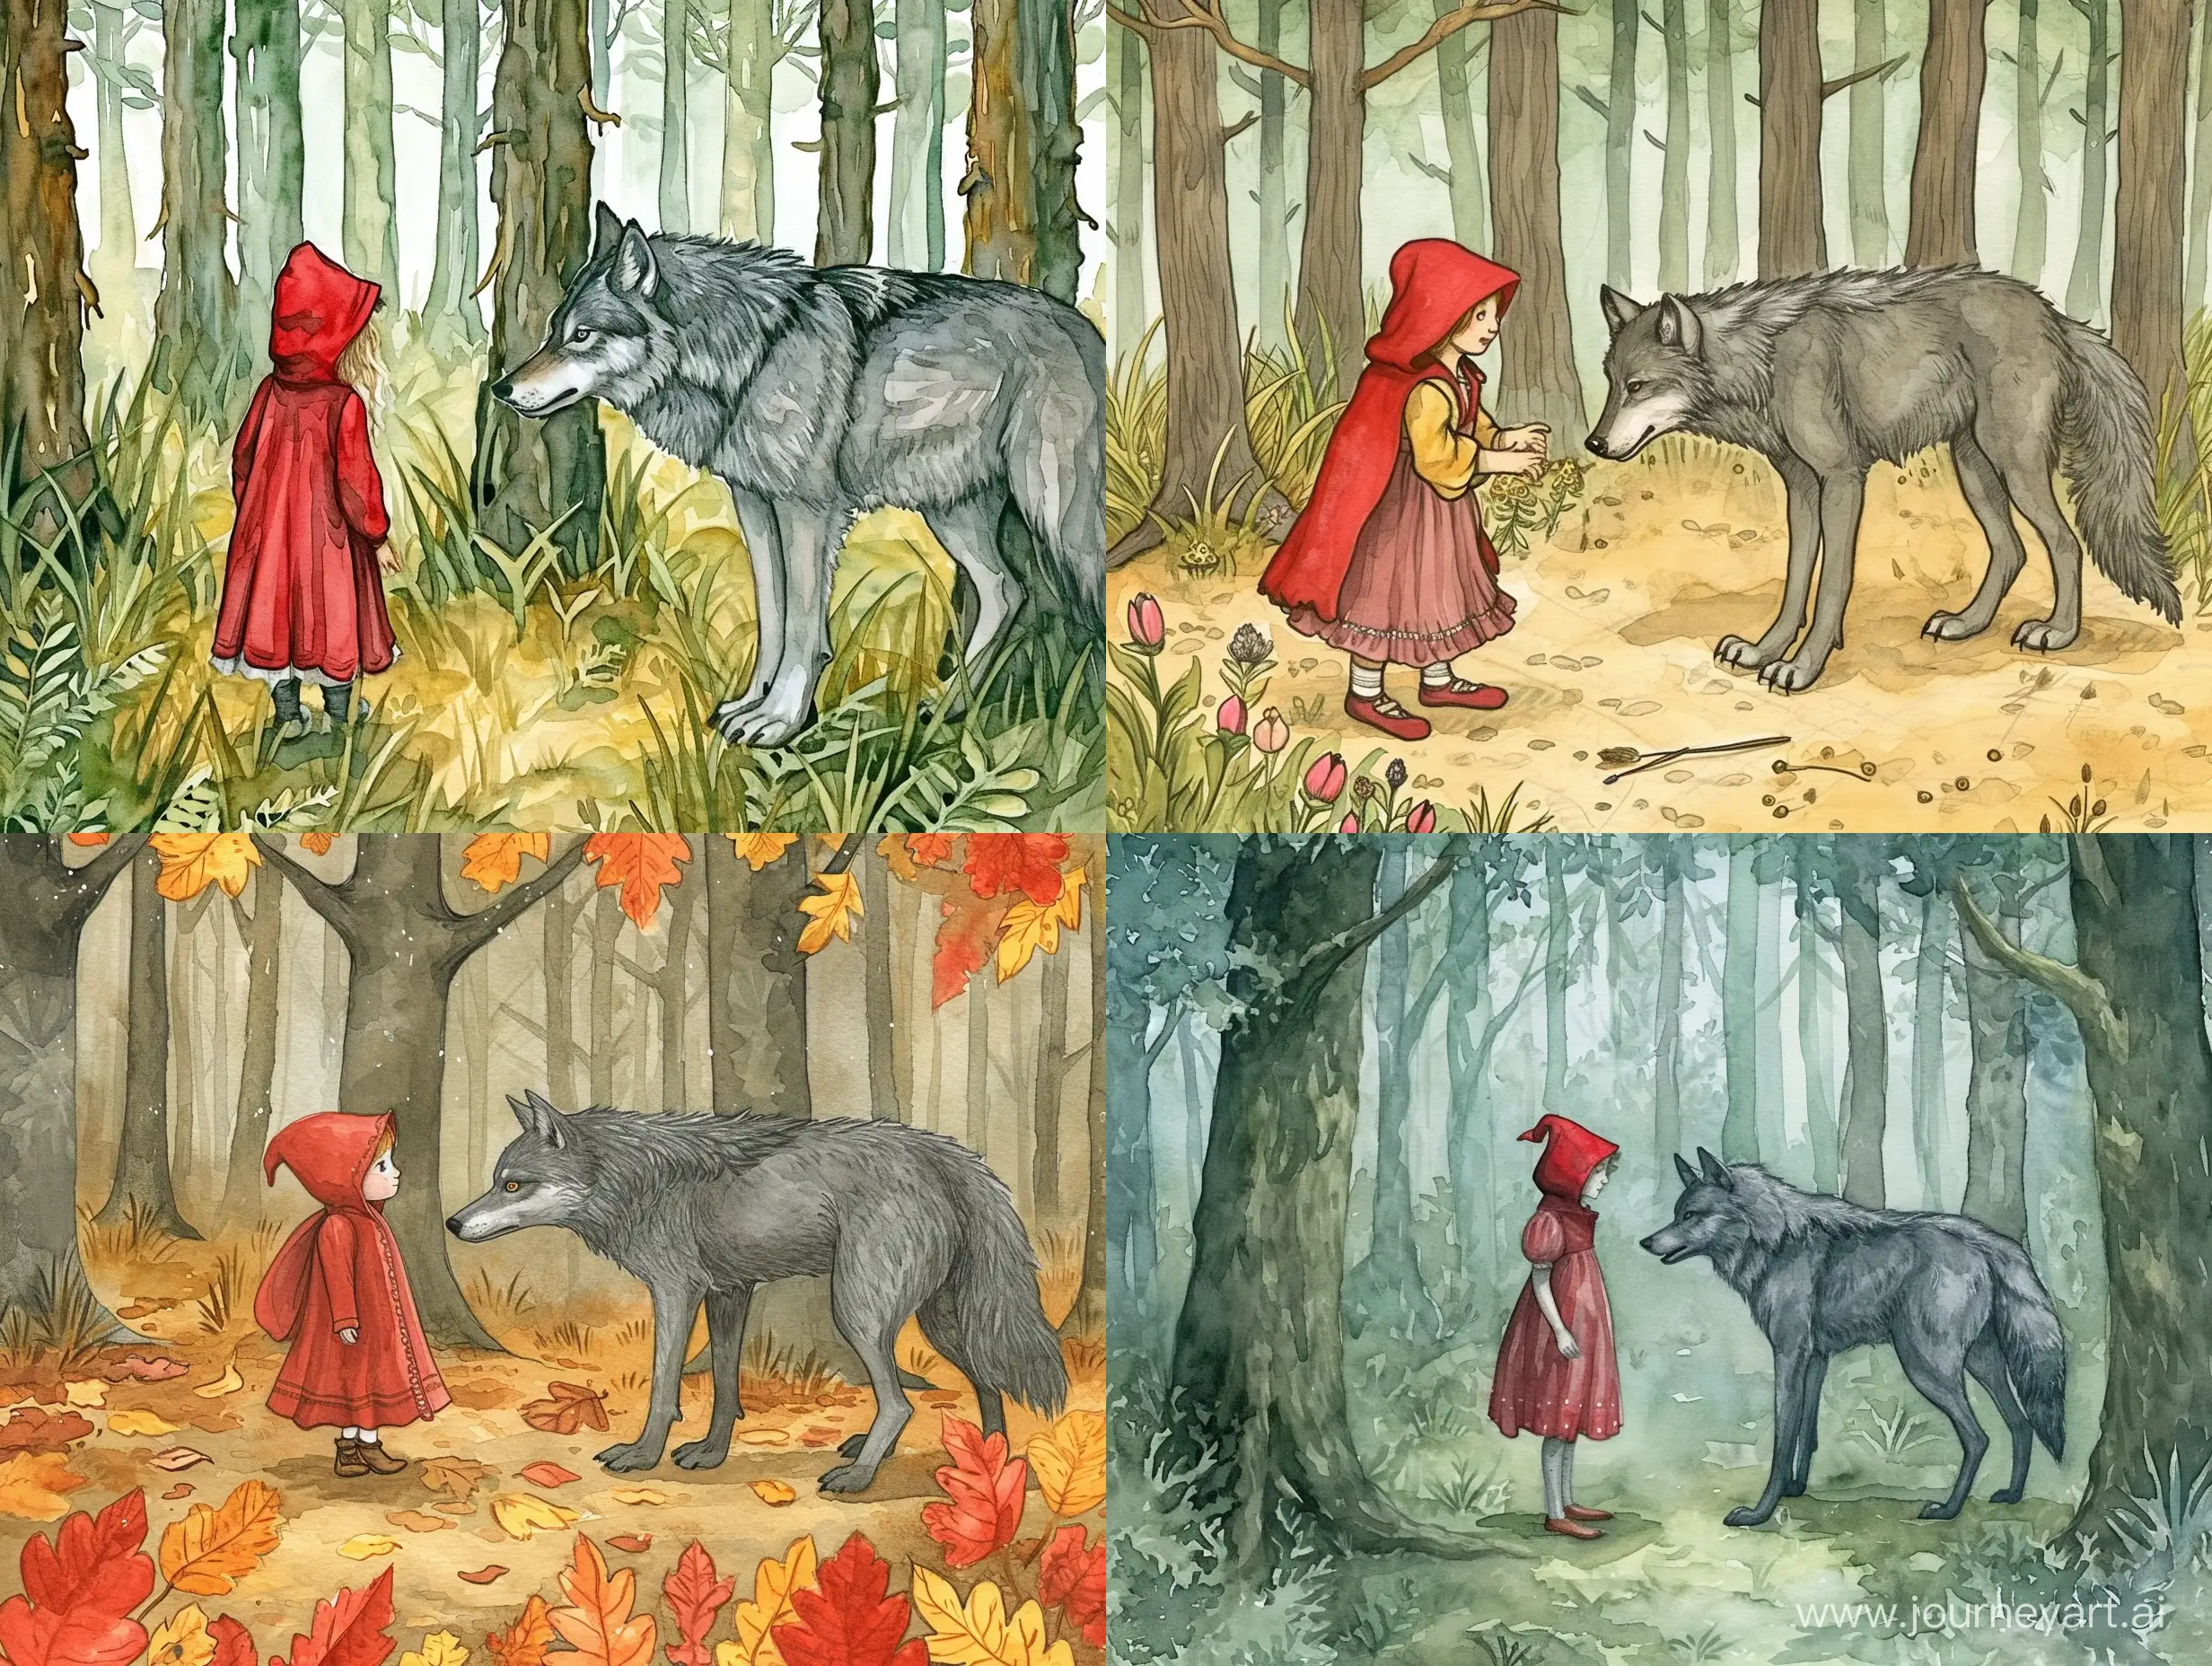 красная шапочка встретила в лесу серого волка, иллюстрация, красиво, сказочно, высокая детализация, акварельный рисунок